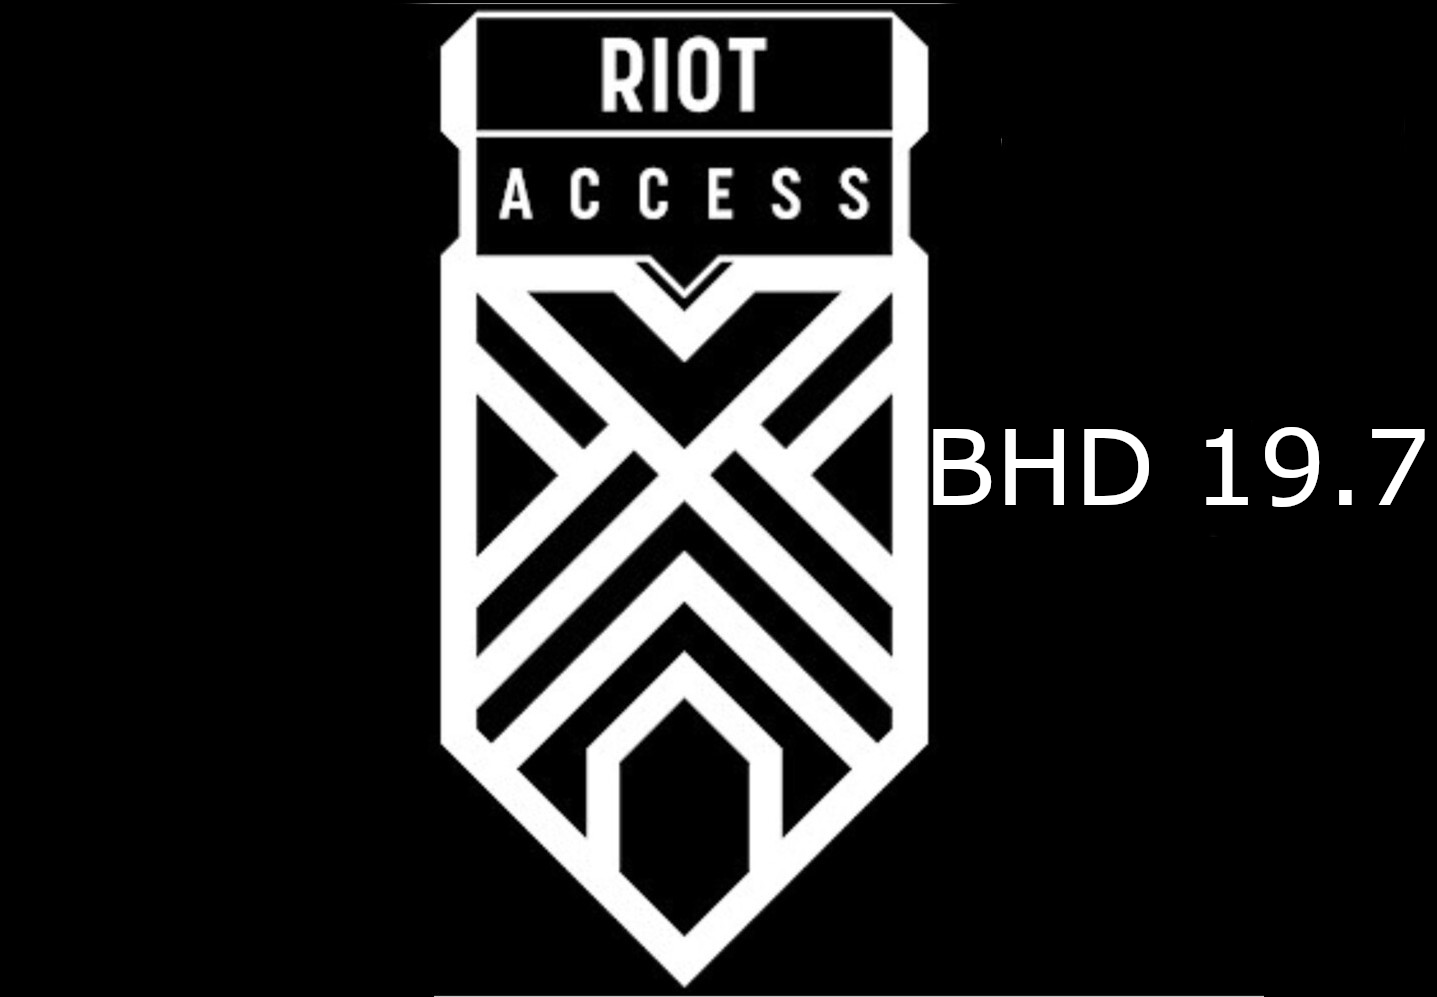 Riot Access 19.7 BHD Code BH